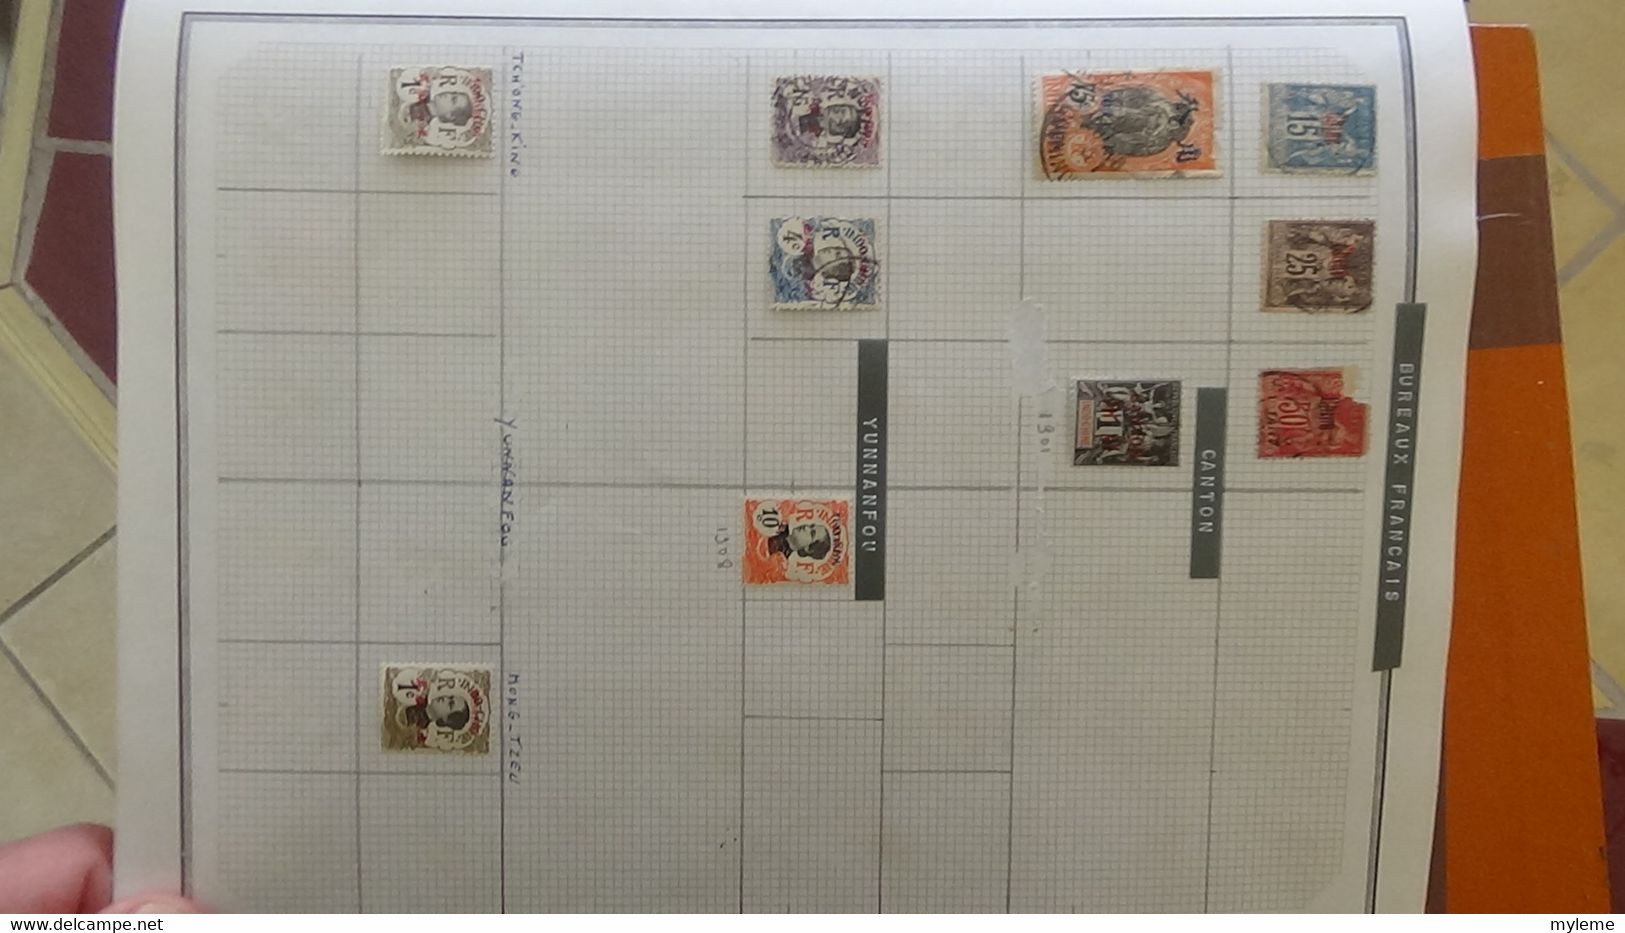 R31 Sur feuilles de cahier timbres Corée, Hong-Kong, Indes, Indochine . Port offert à 50 % pour la France